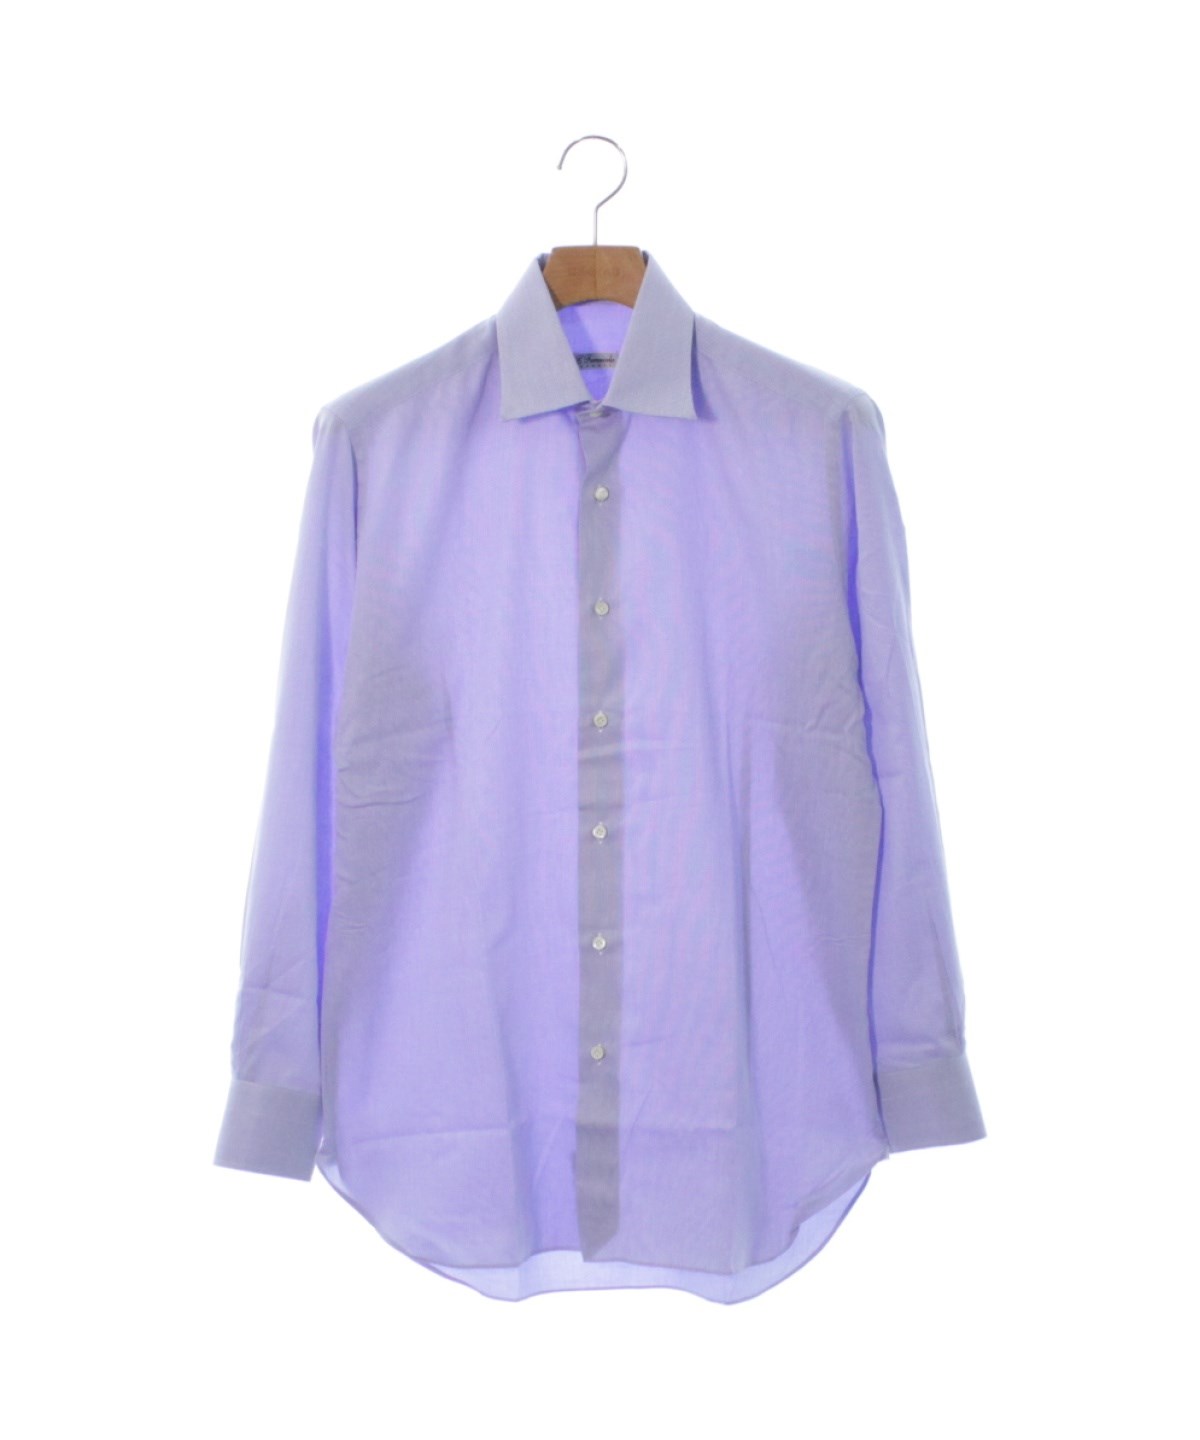 Errico Formicola（エリコフォルミコラ）ドレスシャツ 青 サイズ:39(M